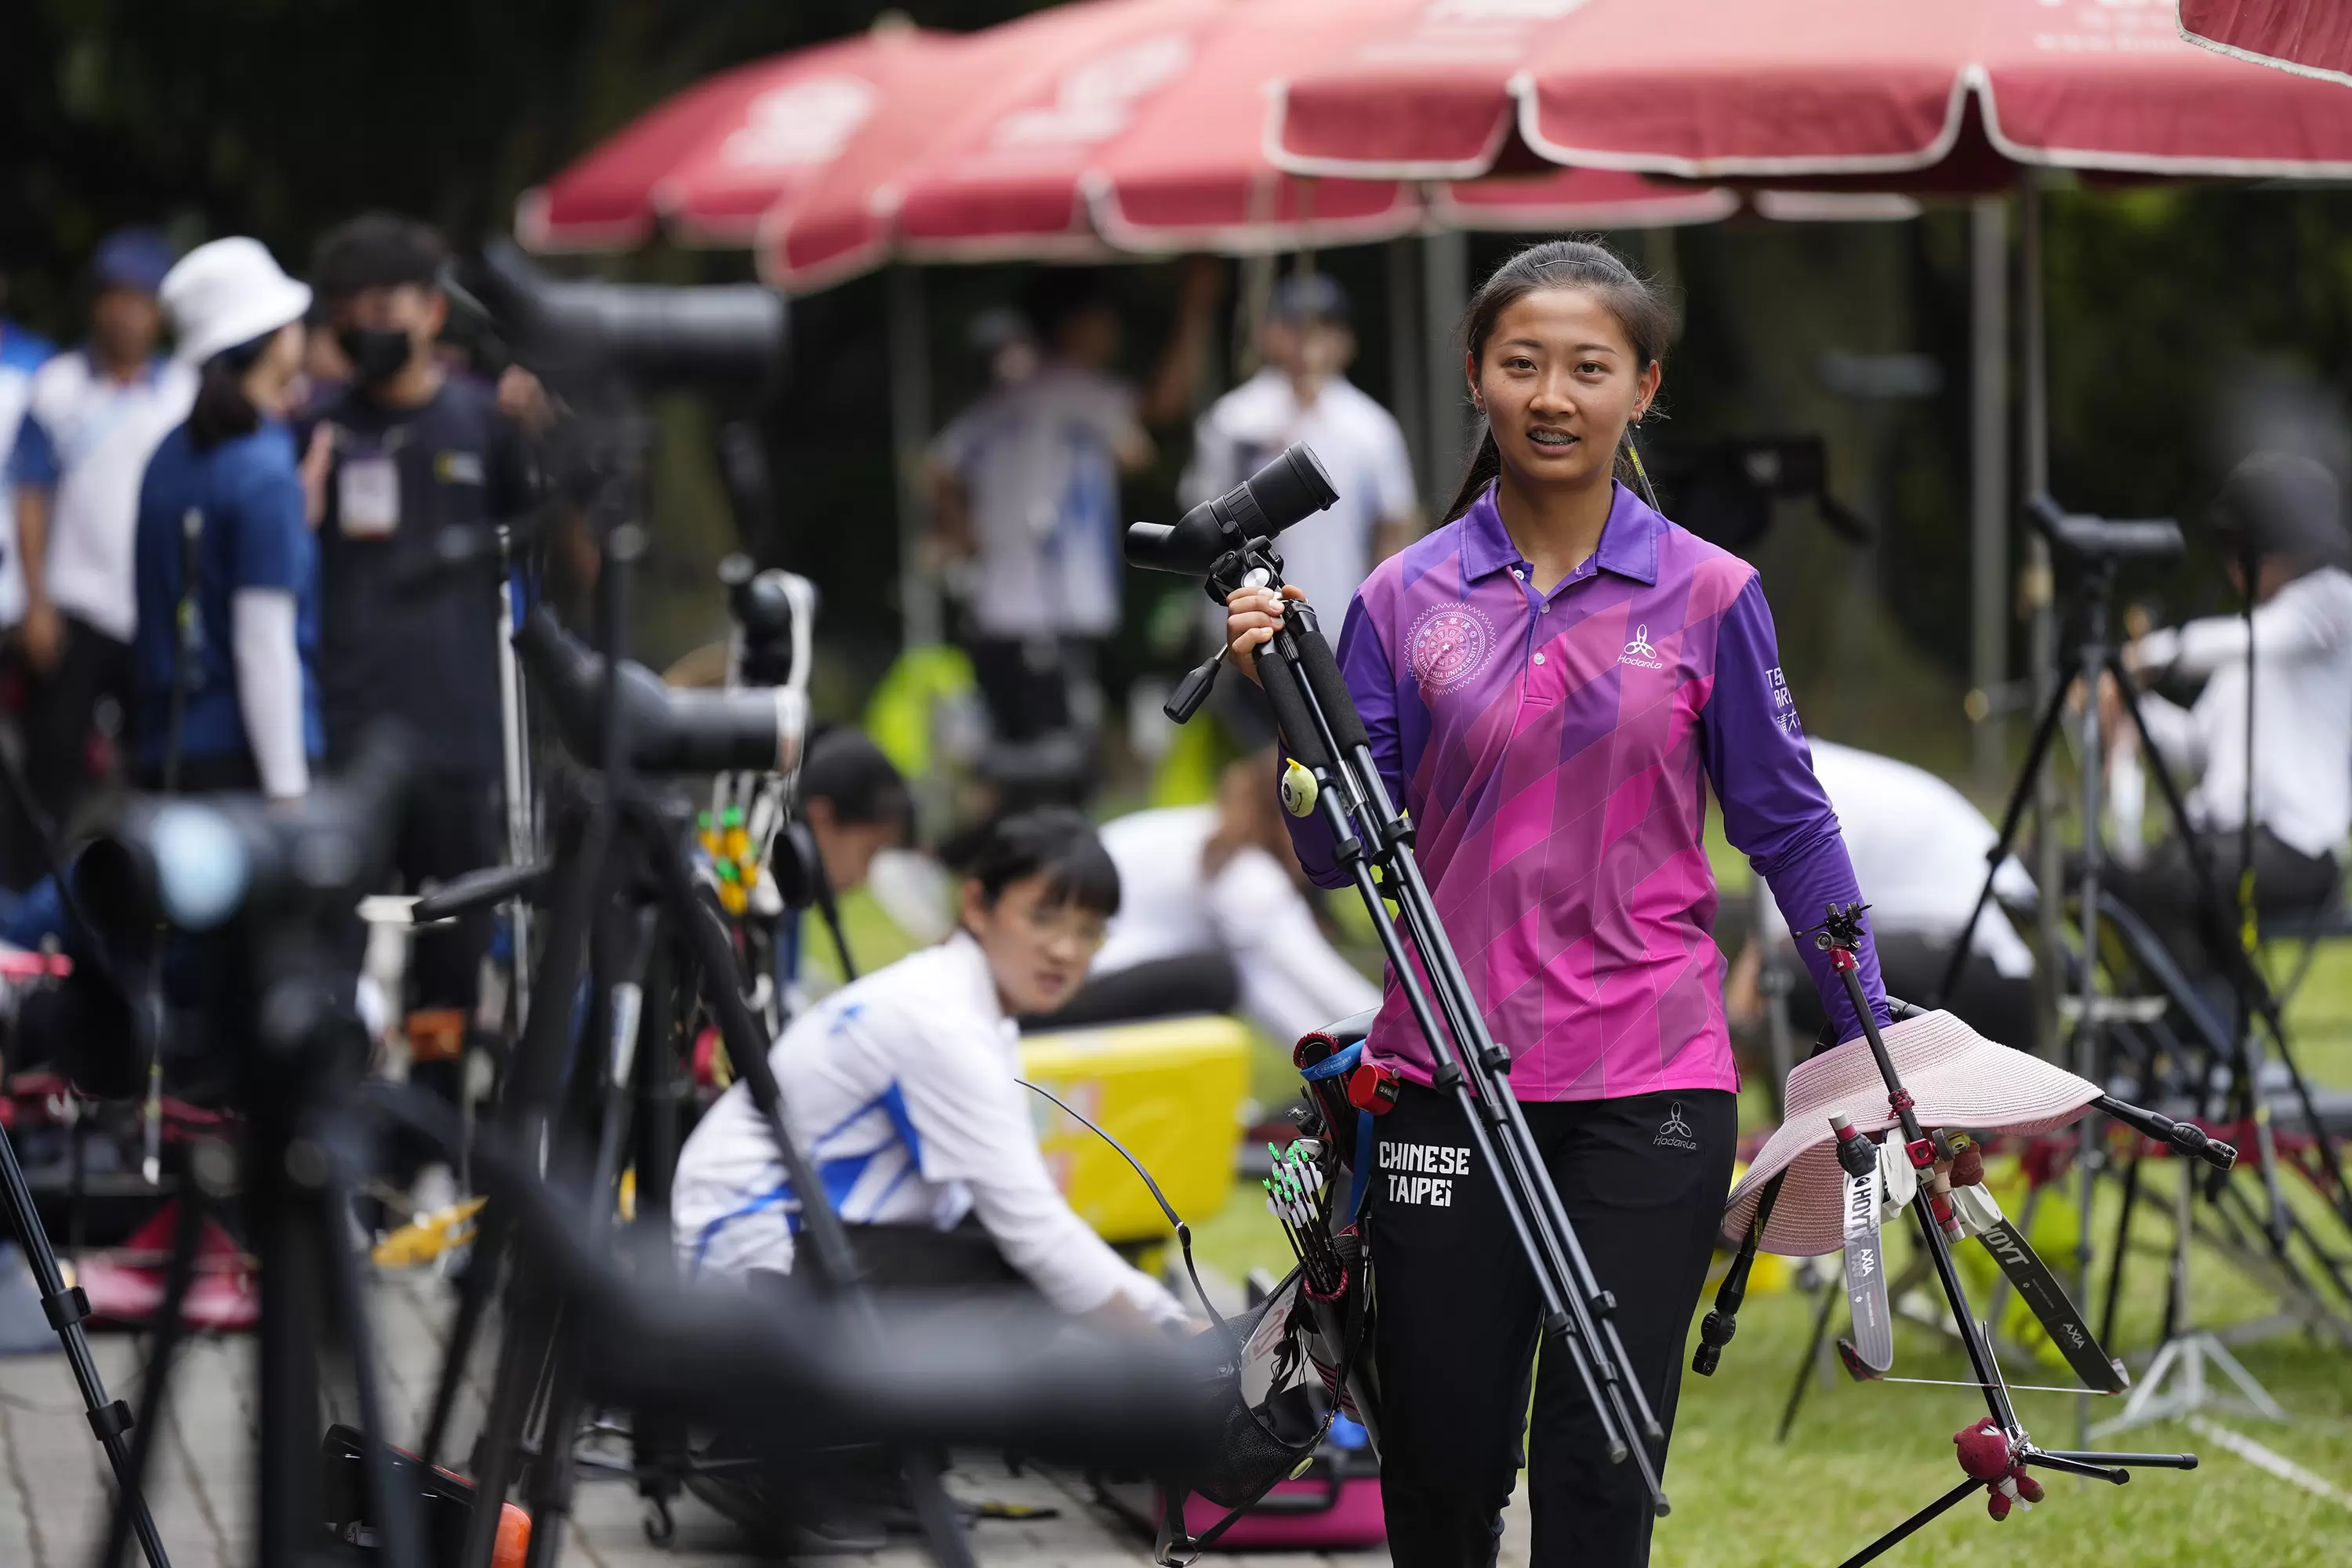 射箭反曲弓公開女子組選手丘意晴排名賽第一名。大會提供